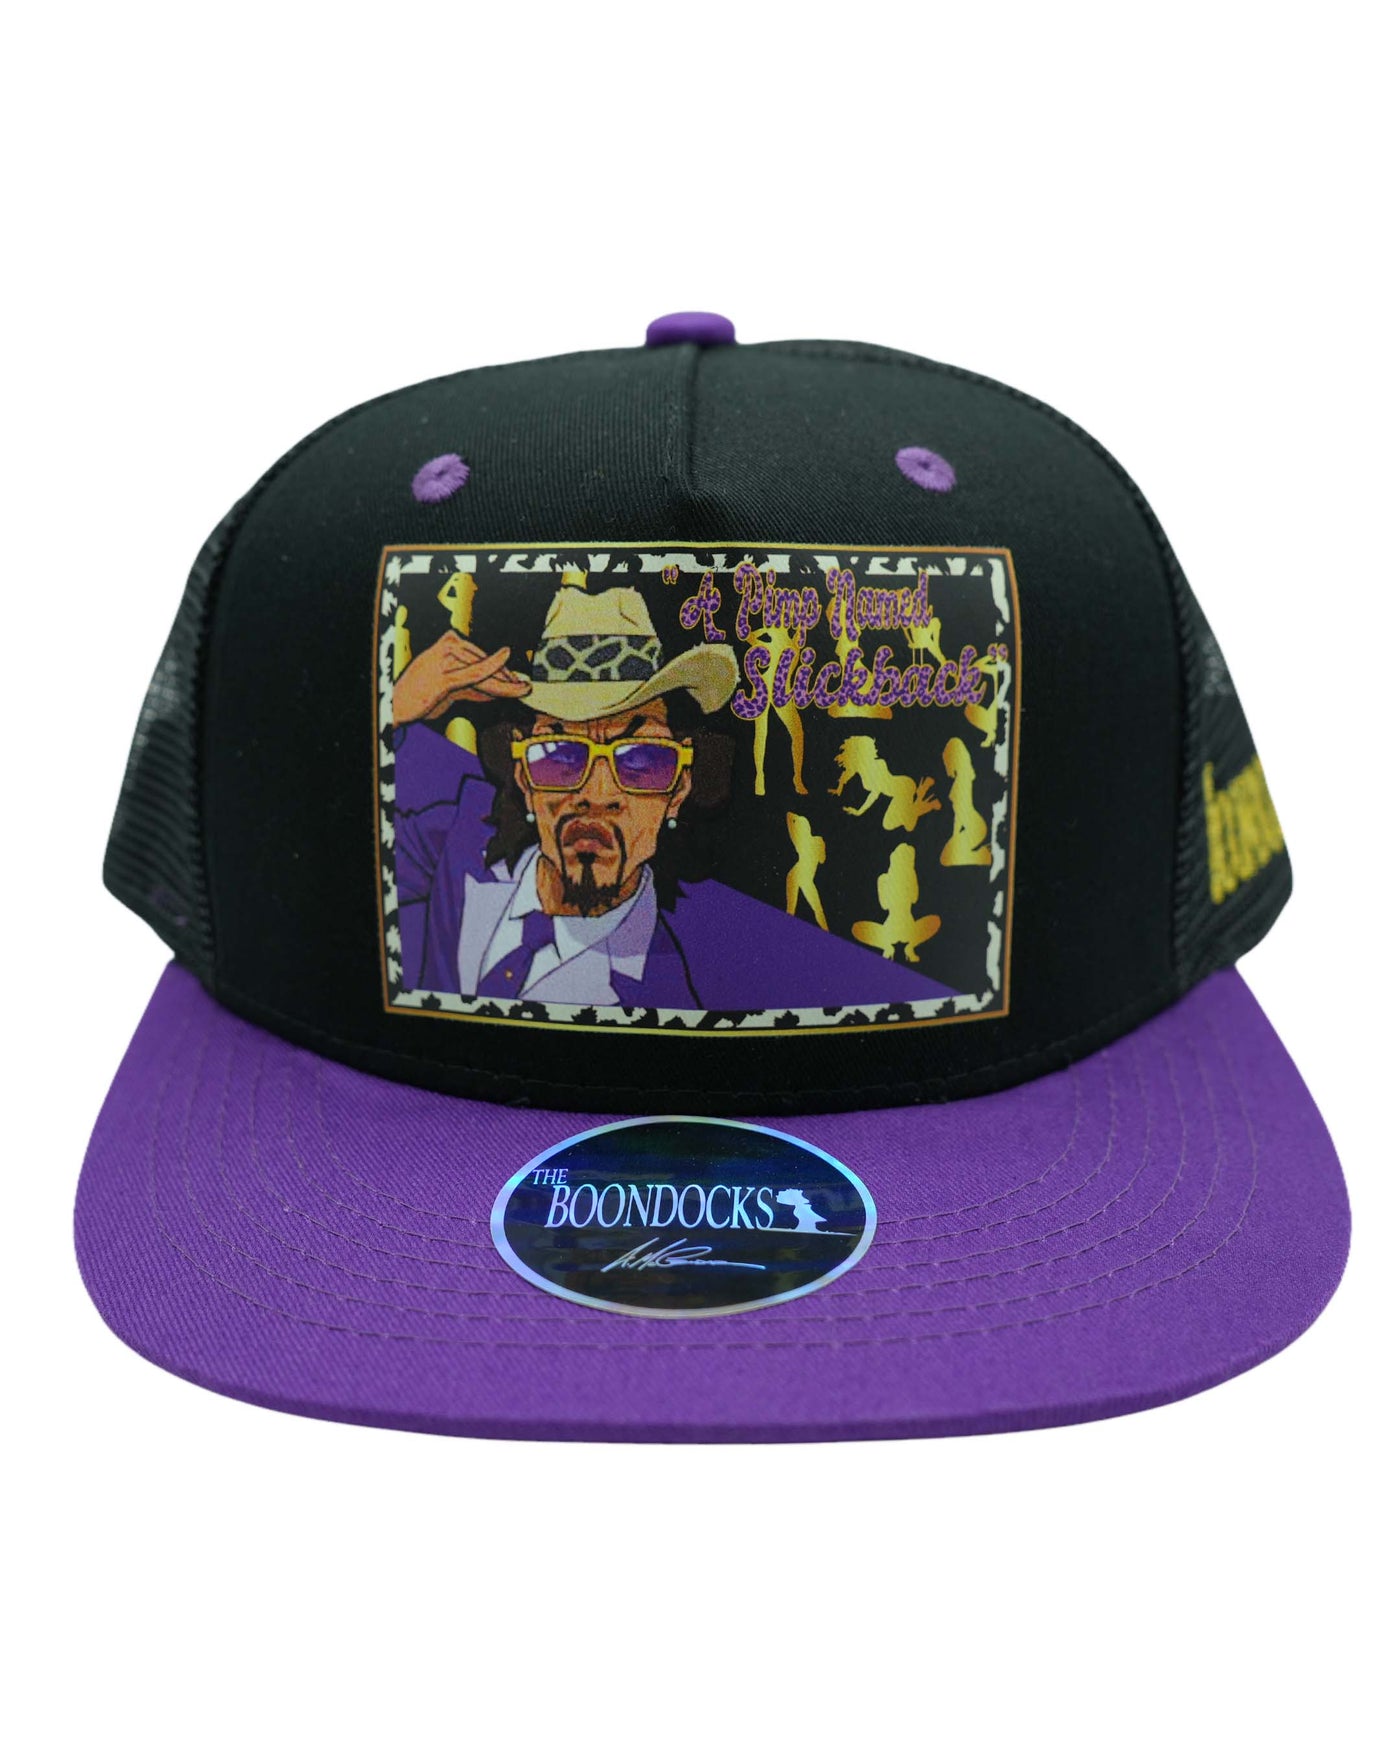 The Boondocks Pimp Named Slickback Purple Snapback Hat